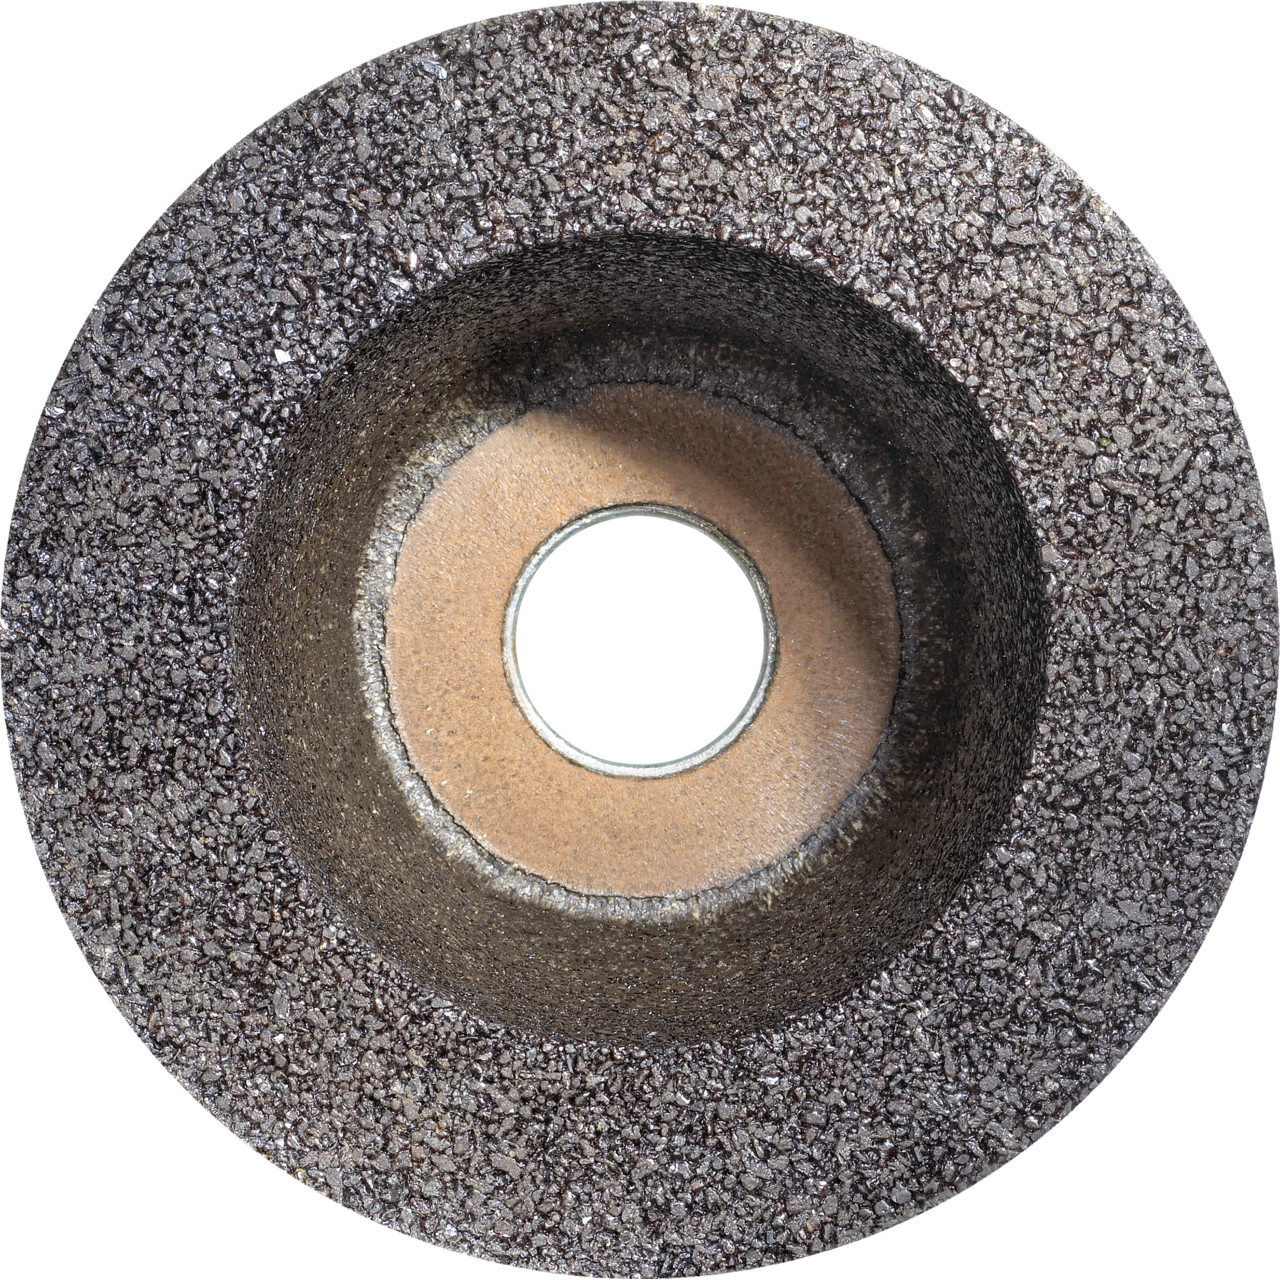 Taza de resina sintética TYROLIT D/JxDxH 110/90x55x22,23 Para piedra, forma: rueda de taza 11BT, Art. 314463